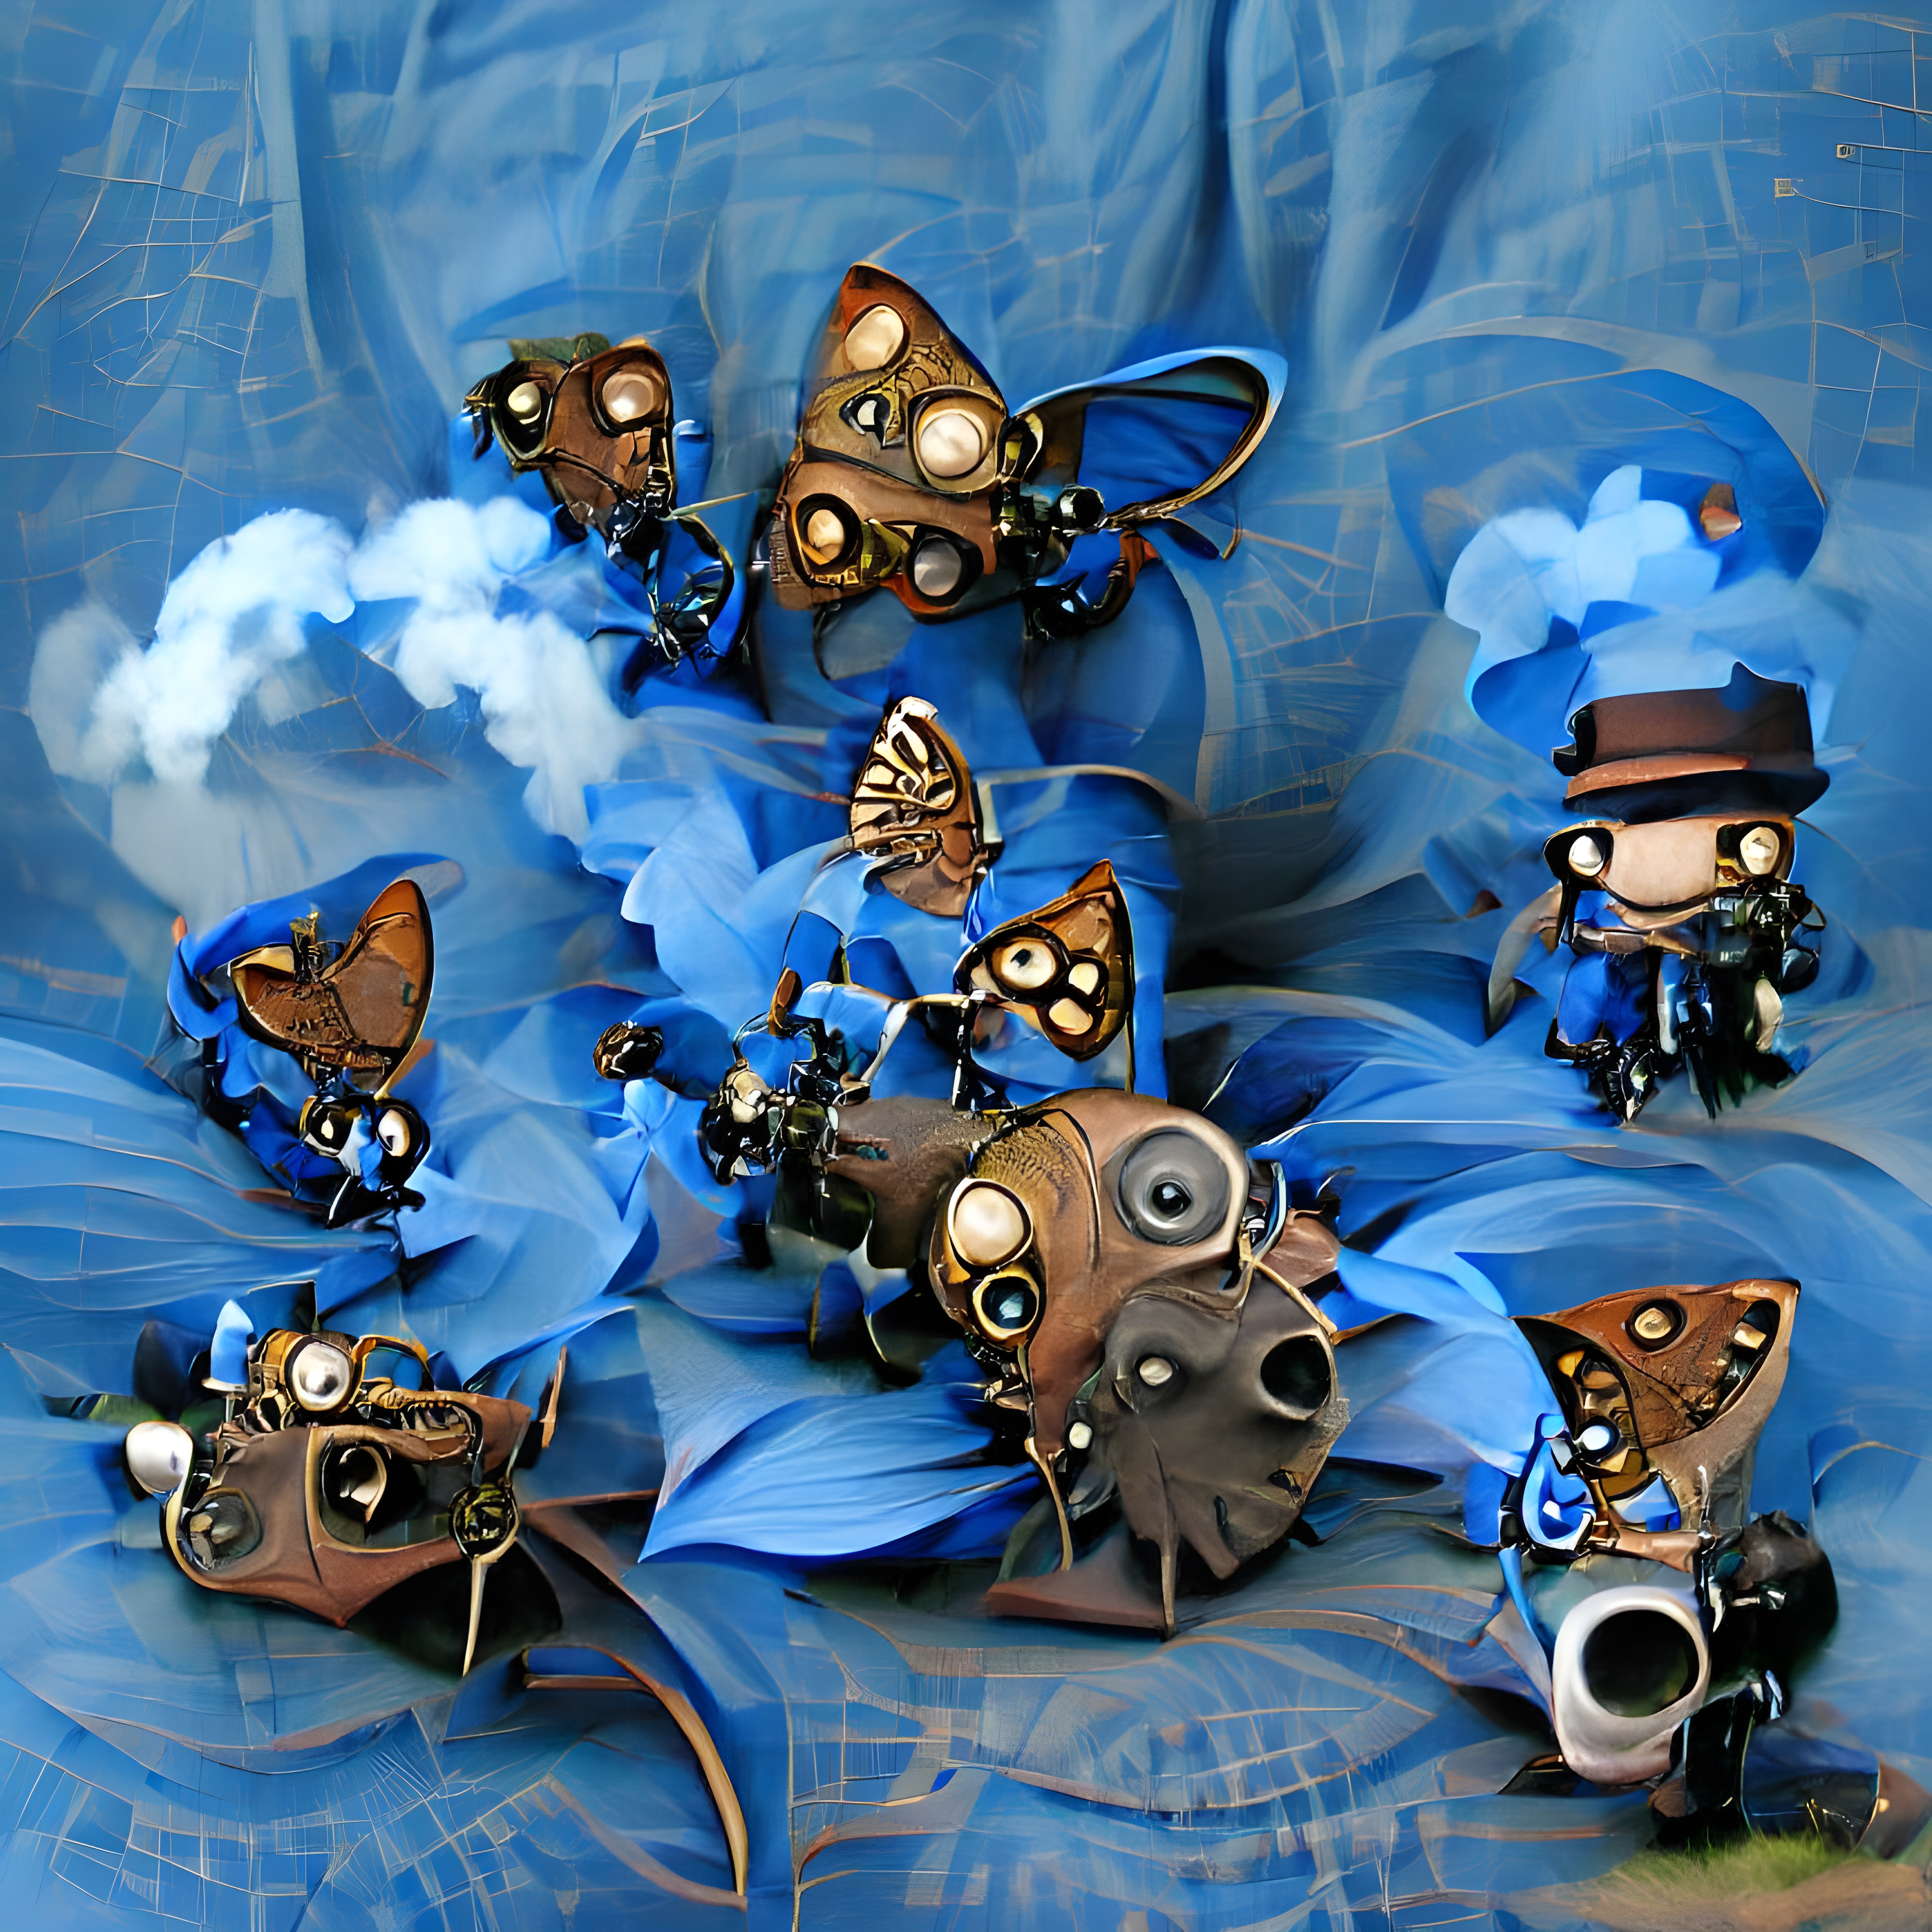 The Cool Butterflies